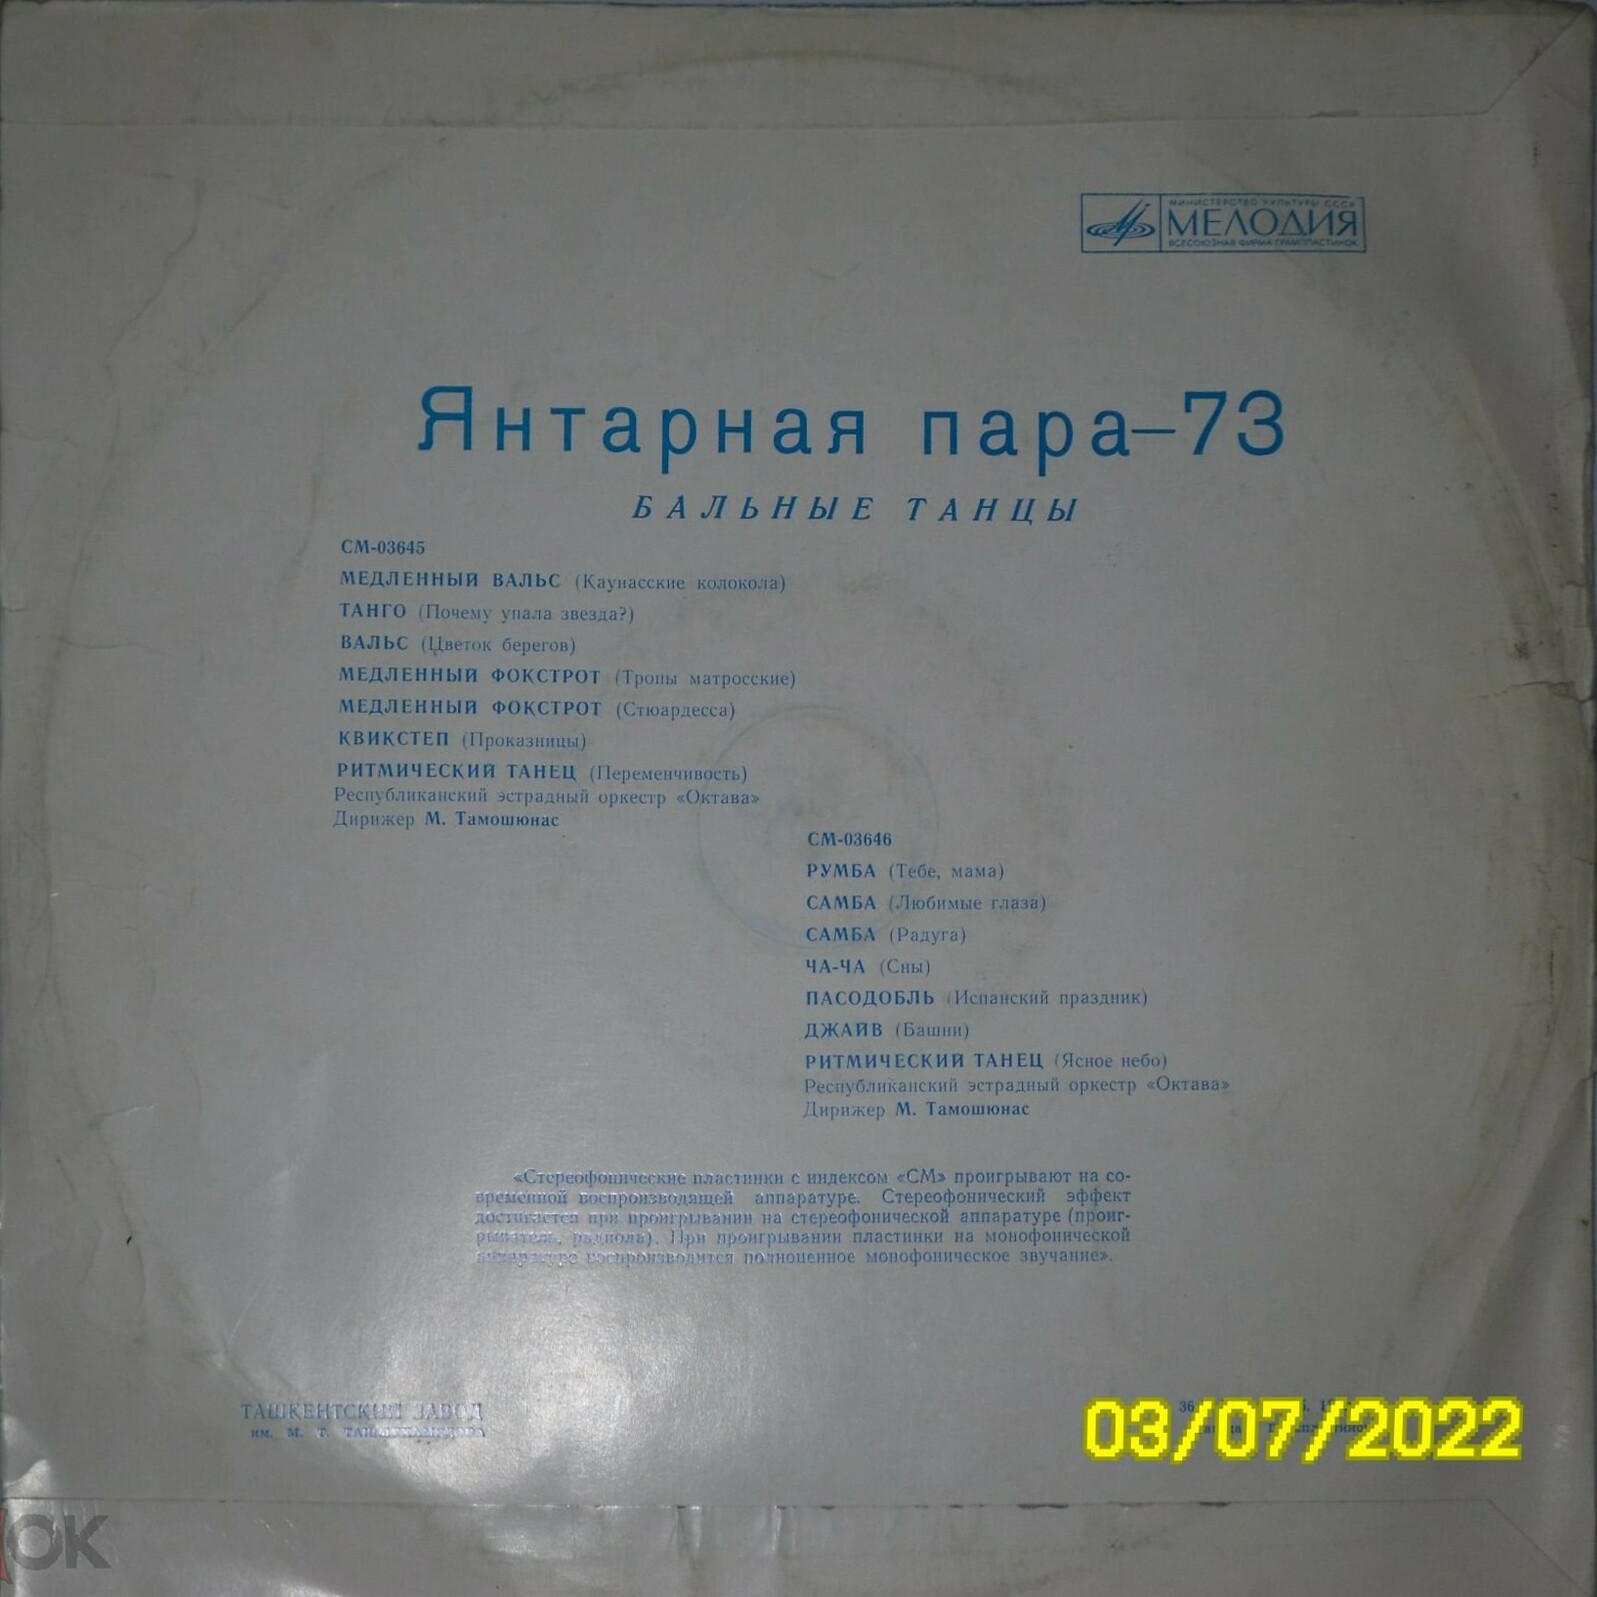 Gintarinė Pora - 73 (Янтарная Пара - 73). БАЛЬНЫЕ ТАНЦЫ.